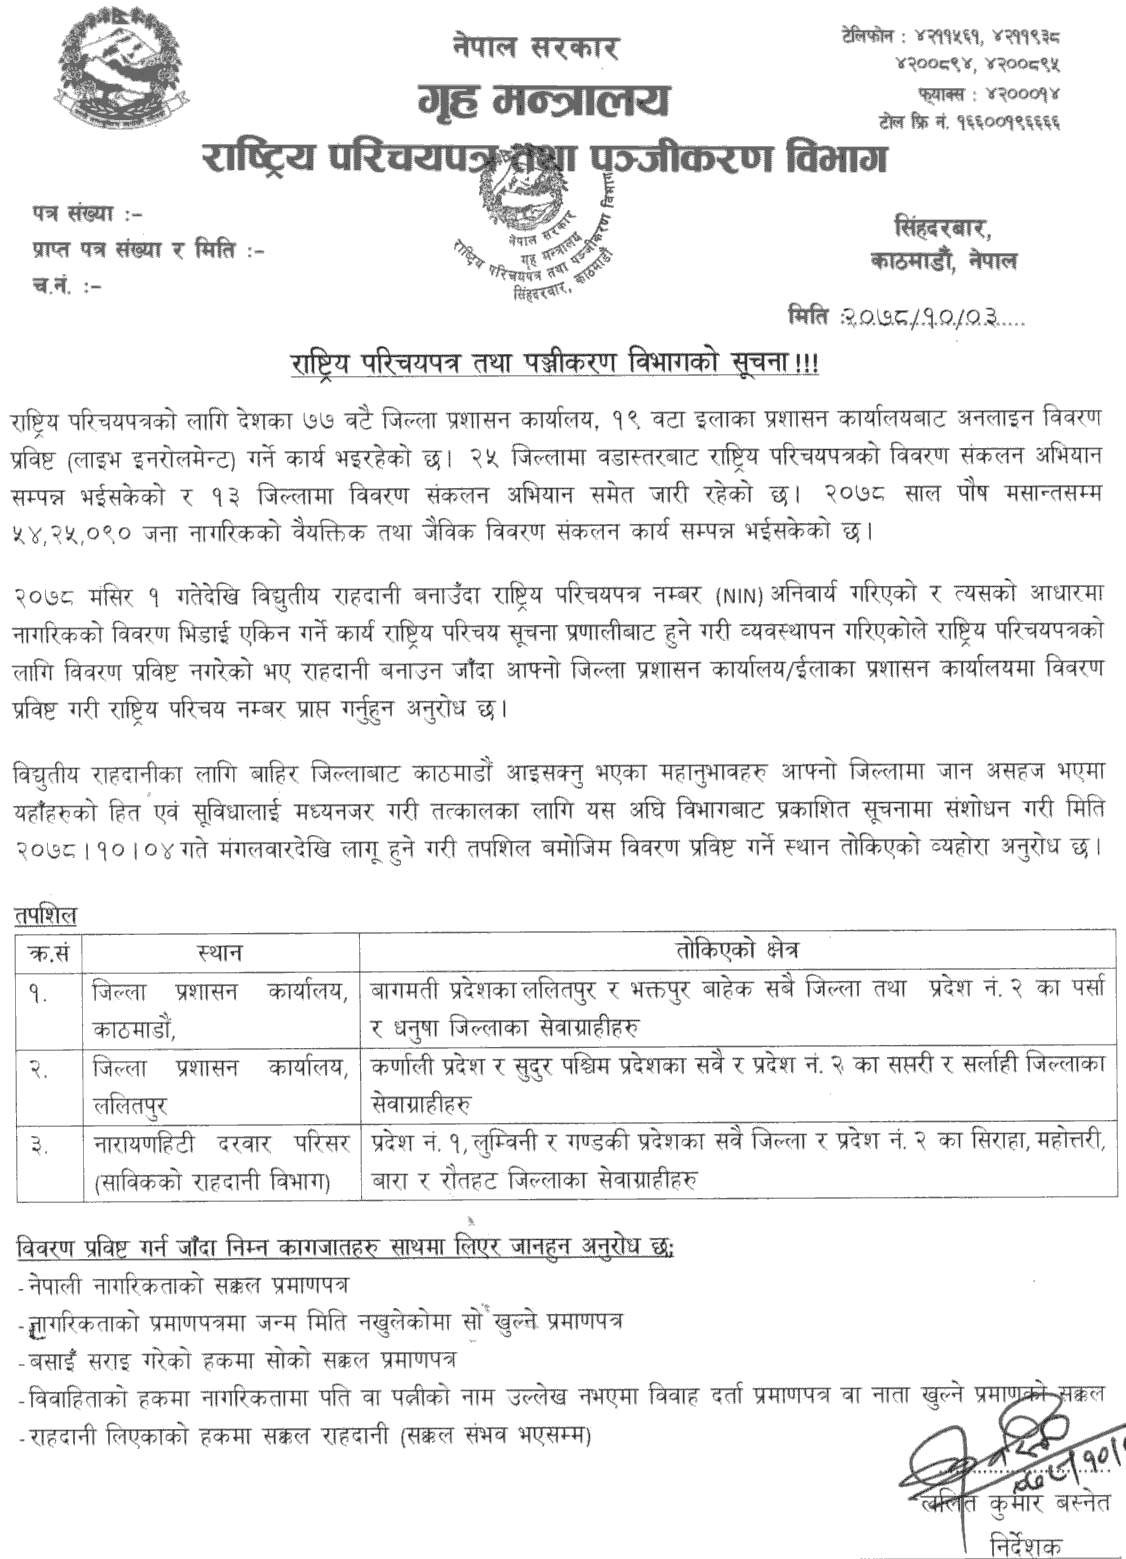 Rastriya ParichayaPatra Bibhag Notice for National Identity Card and Registration